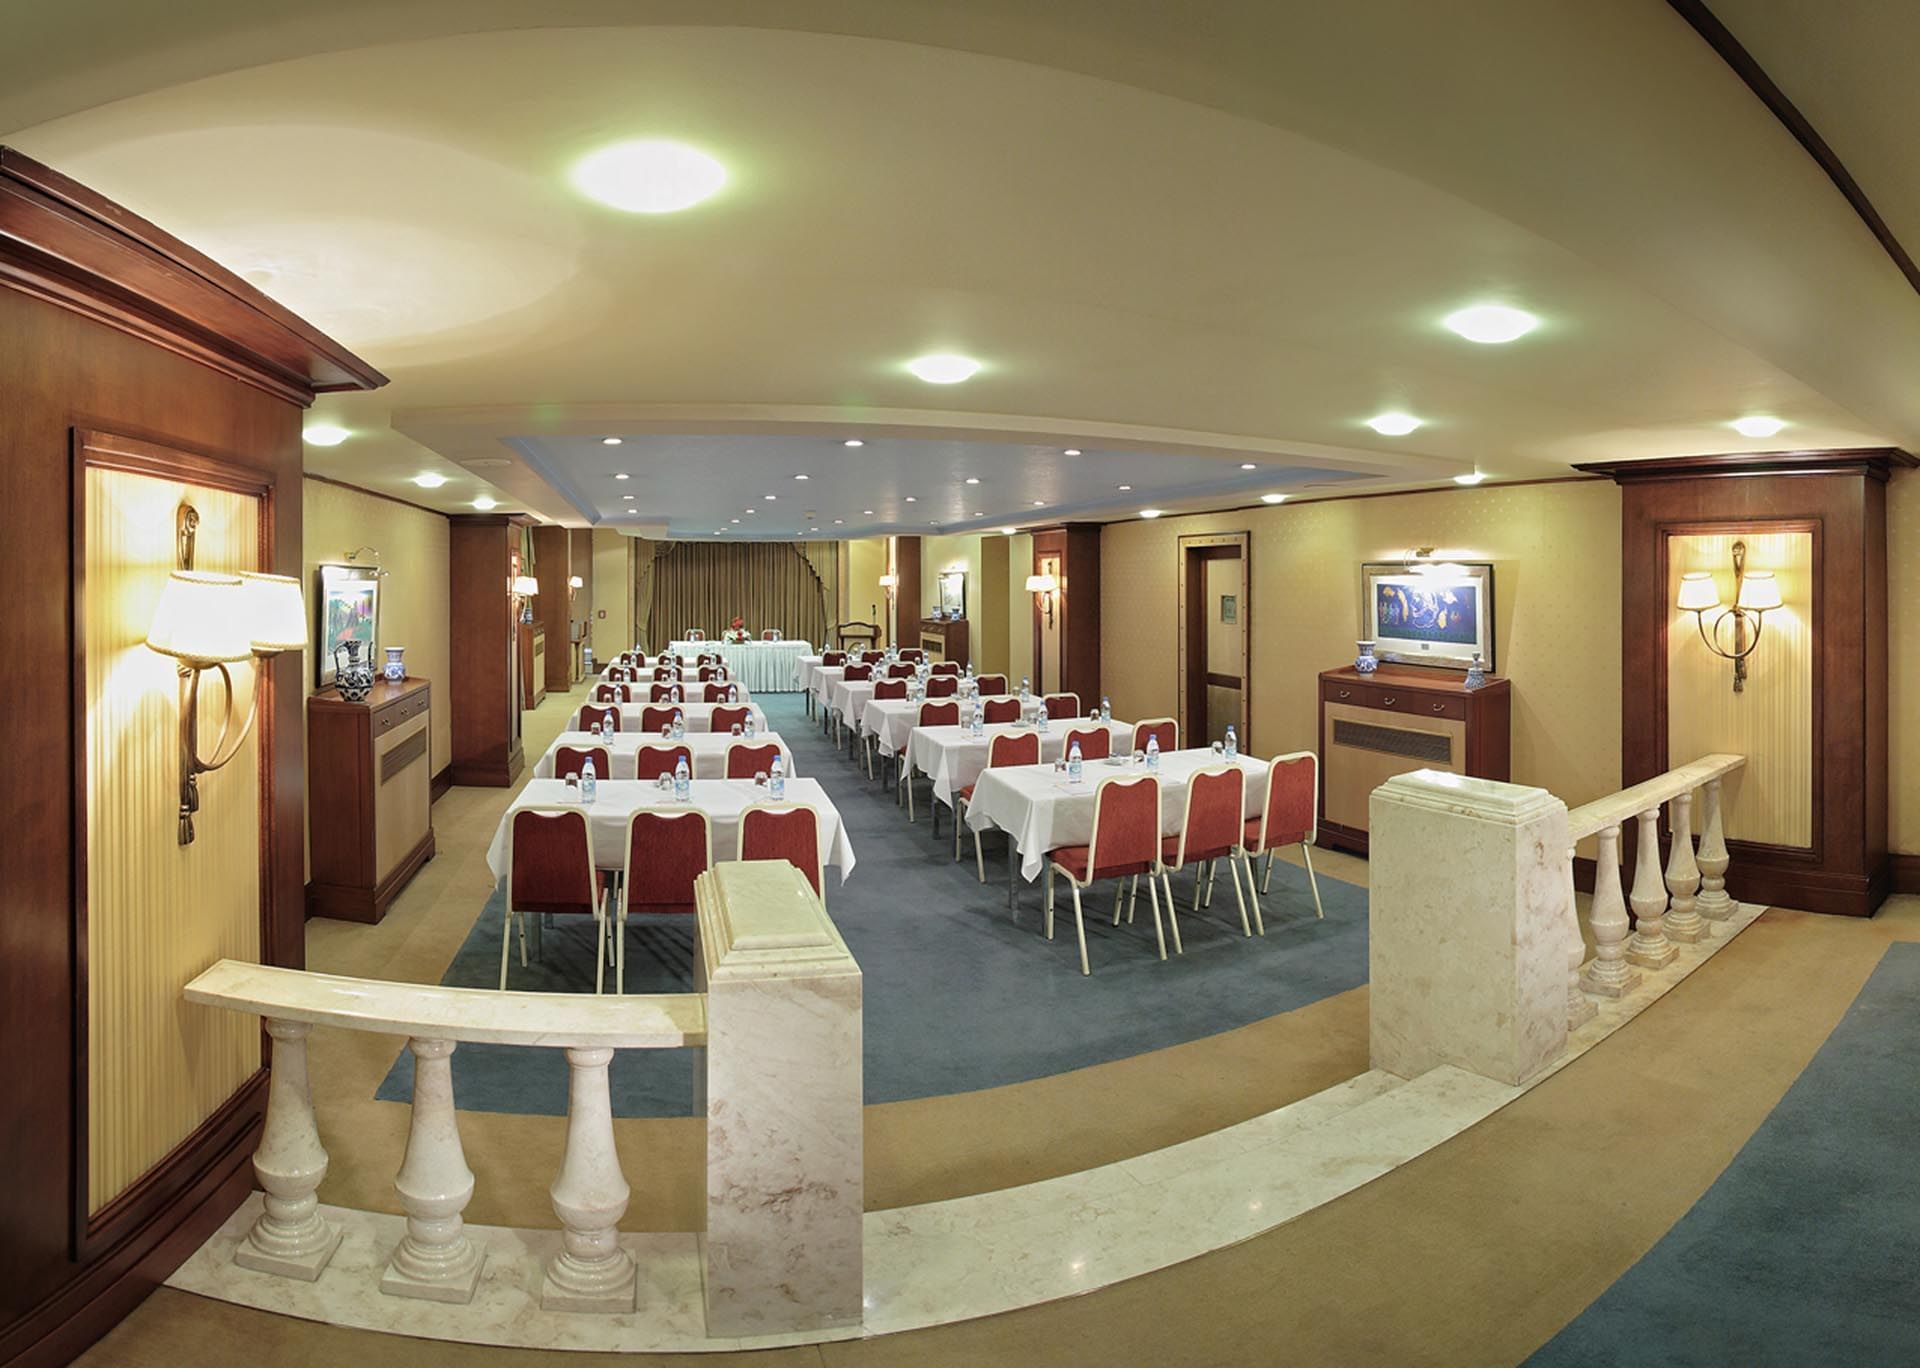 Bosphorus Meeting Room  Classroom  Style II Eresin hotels sultan